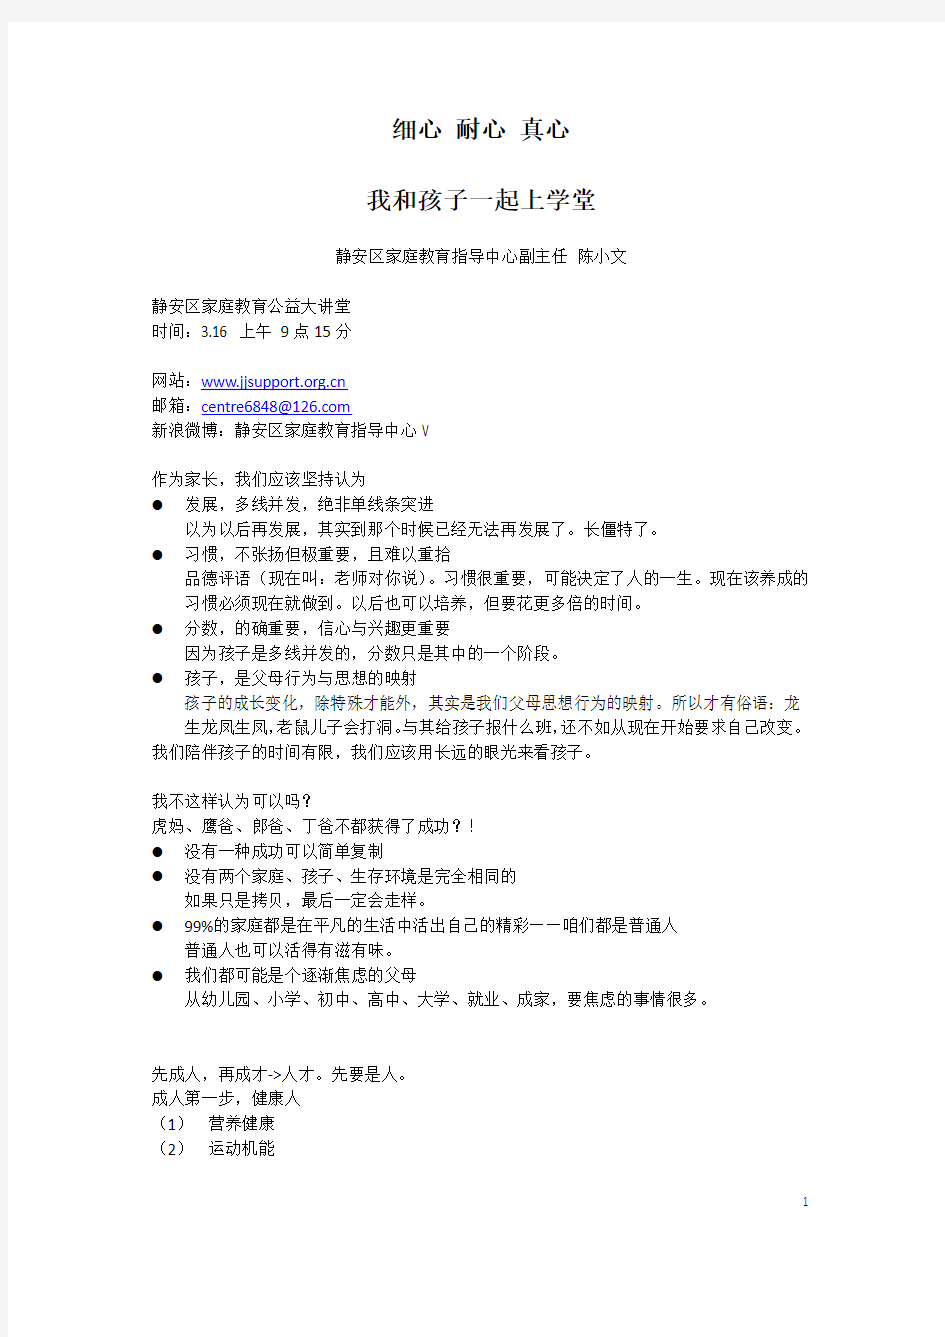 上海市静安区家庭教育公益大讲堂(2013年3月16日记录稿)